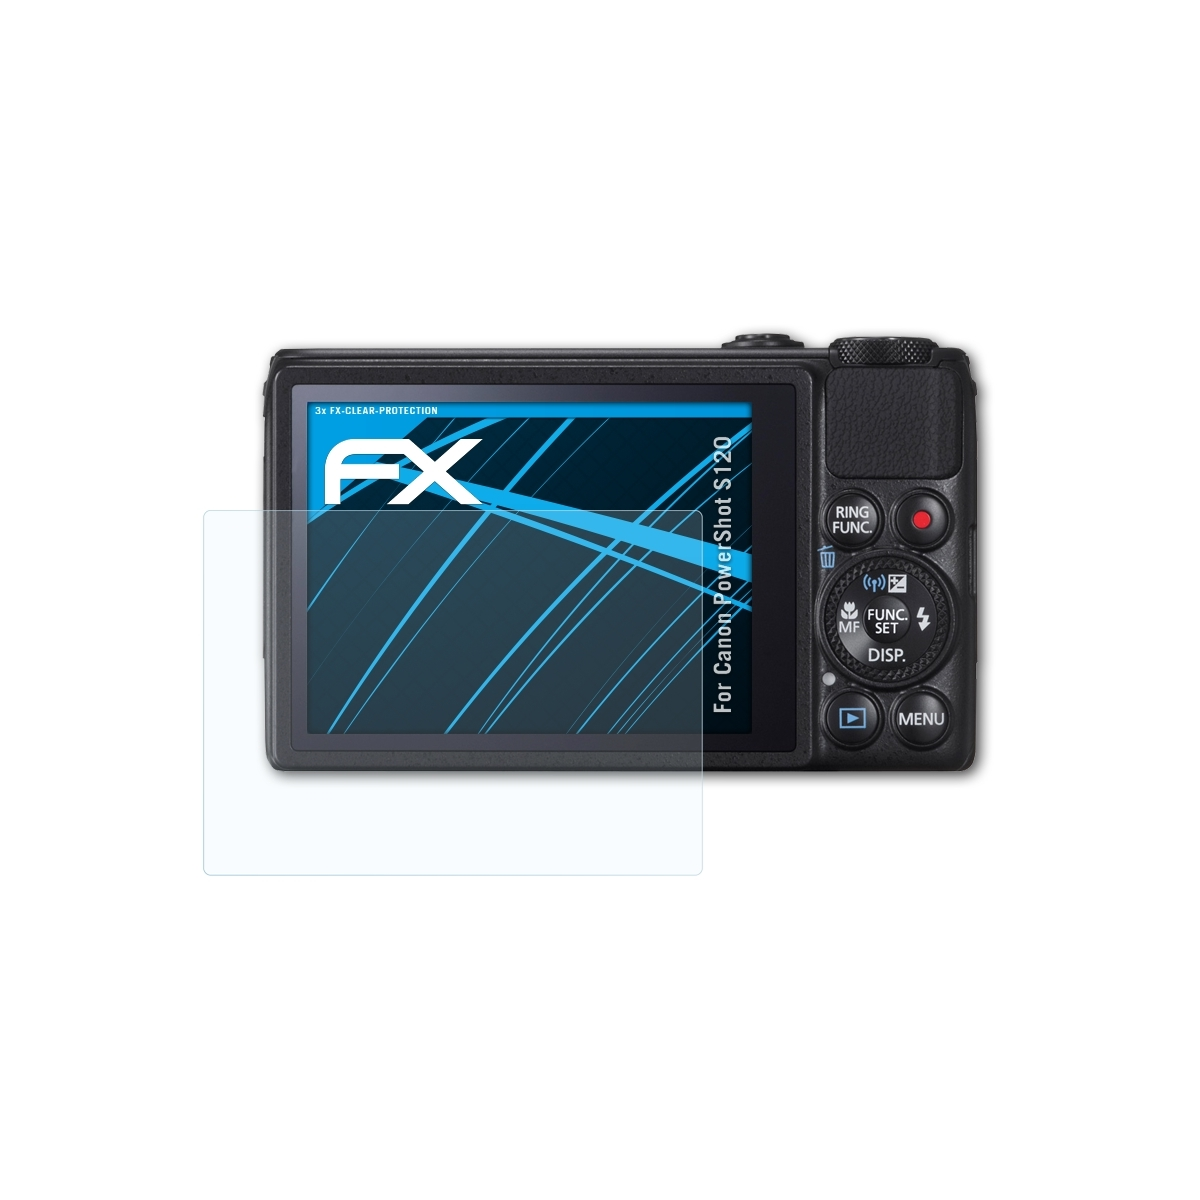 FX-Clear ATFOLIX Canon PowerShot S120) 3x Displayschutz(für